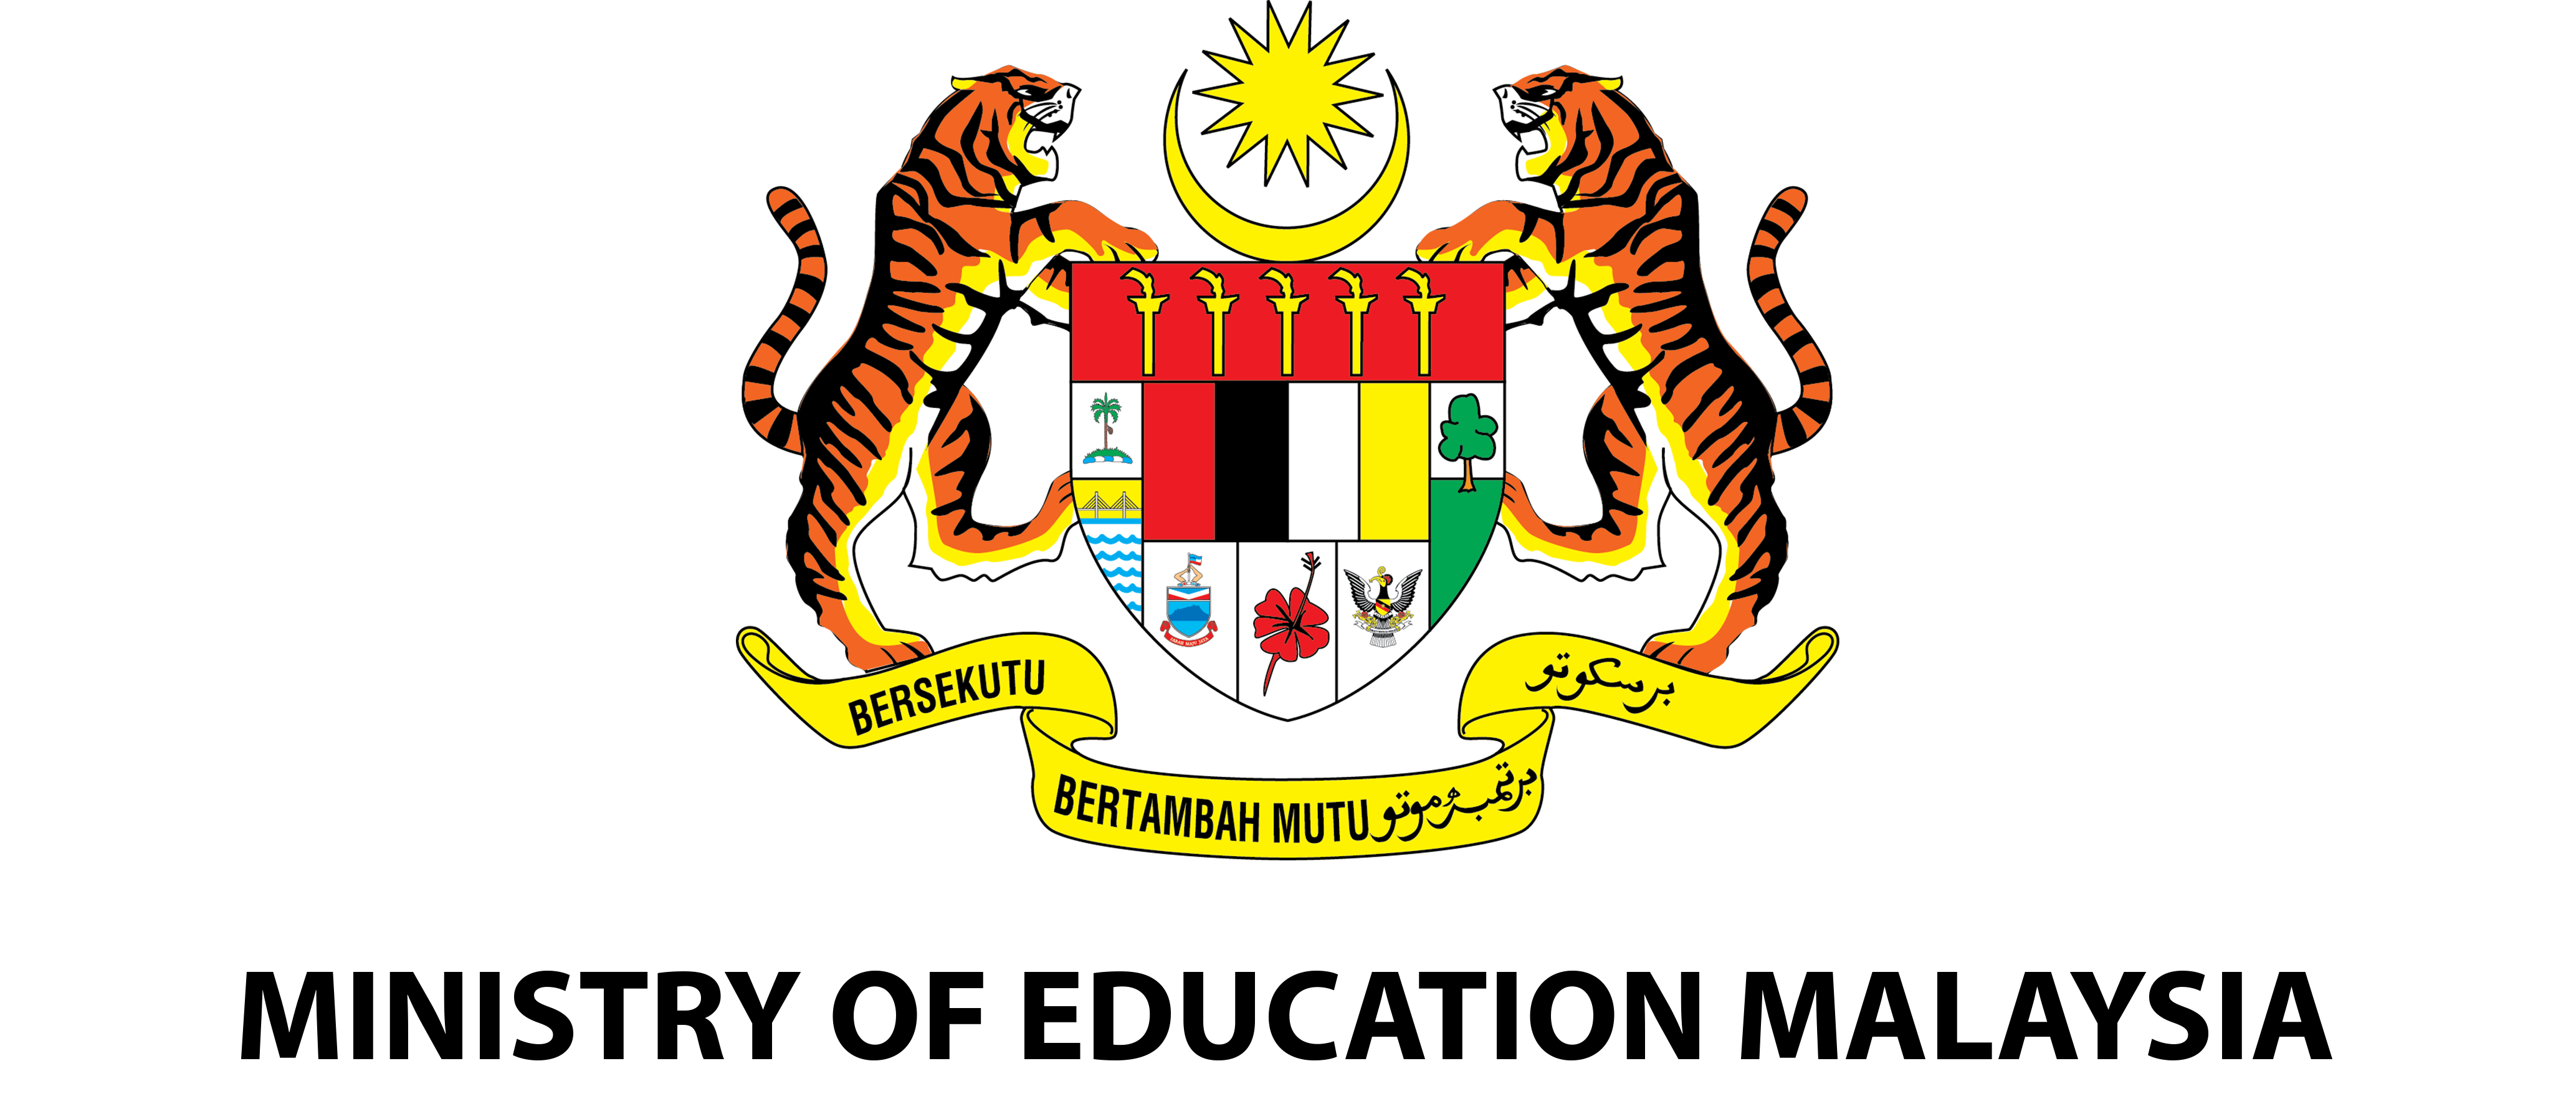 Logo Baharu KPM 2020 – Kementerian Pendidikan Malaysia 